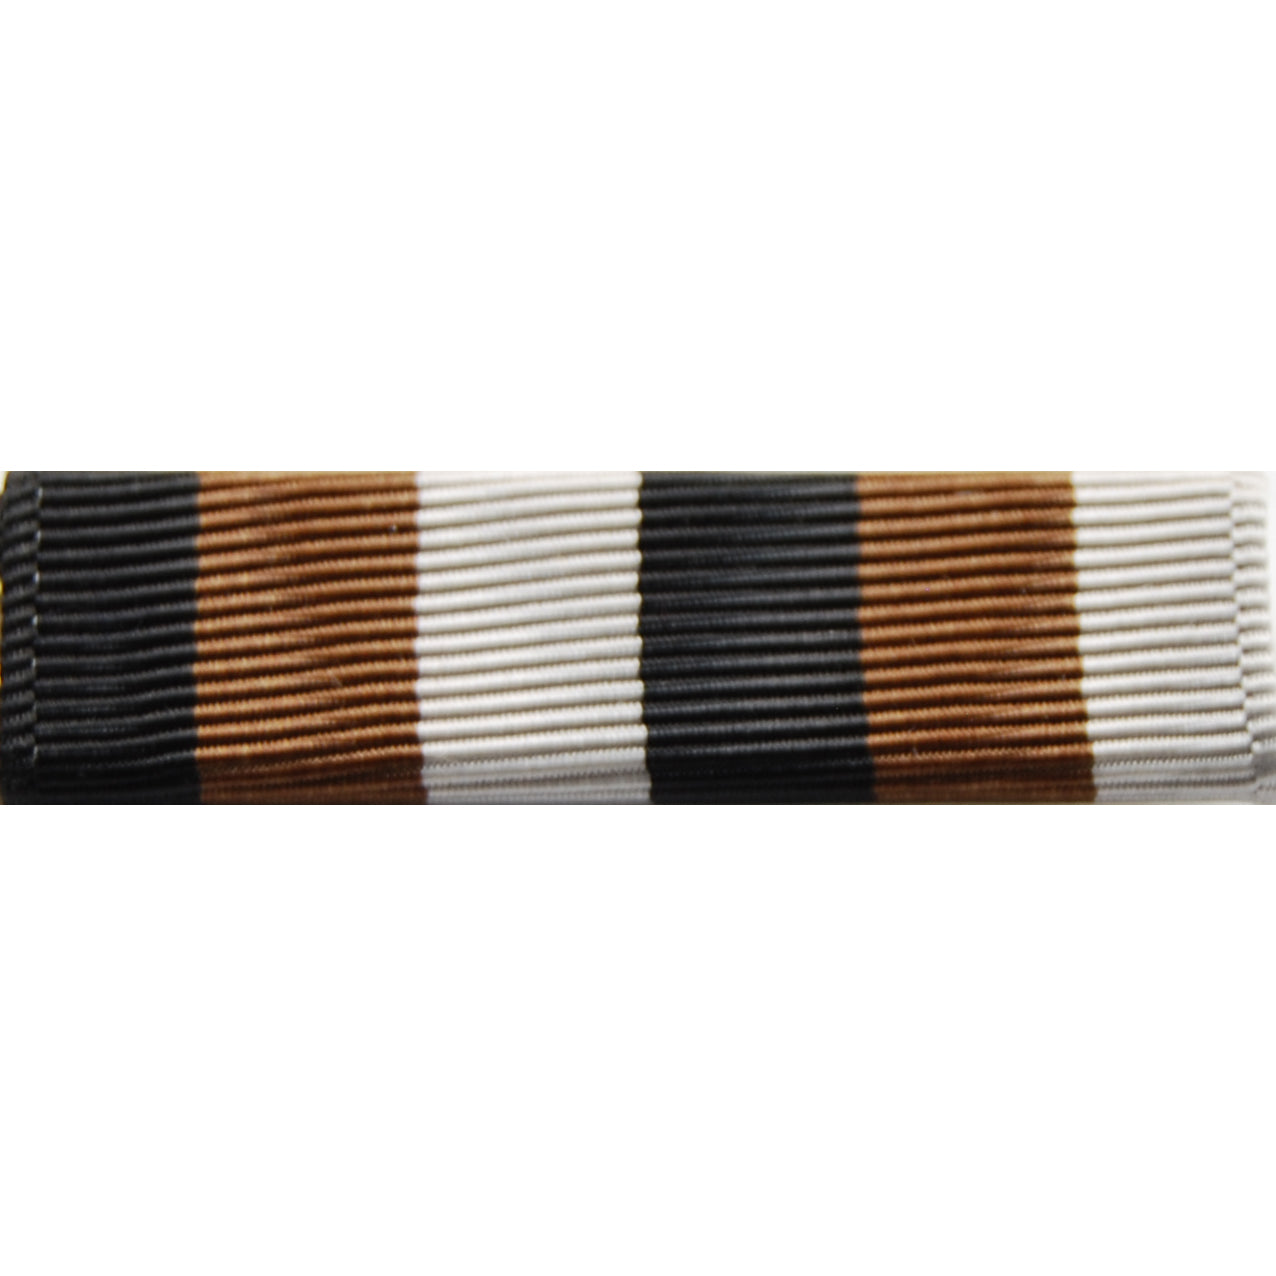 Army Senior ROTC Ribbons (Each)